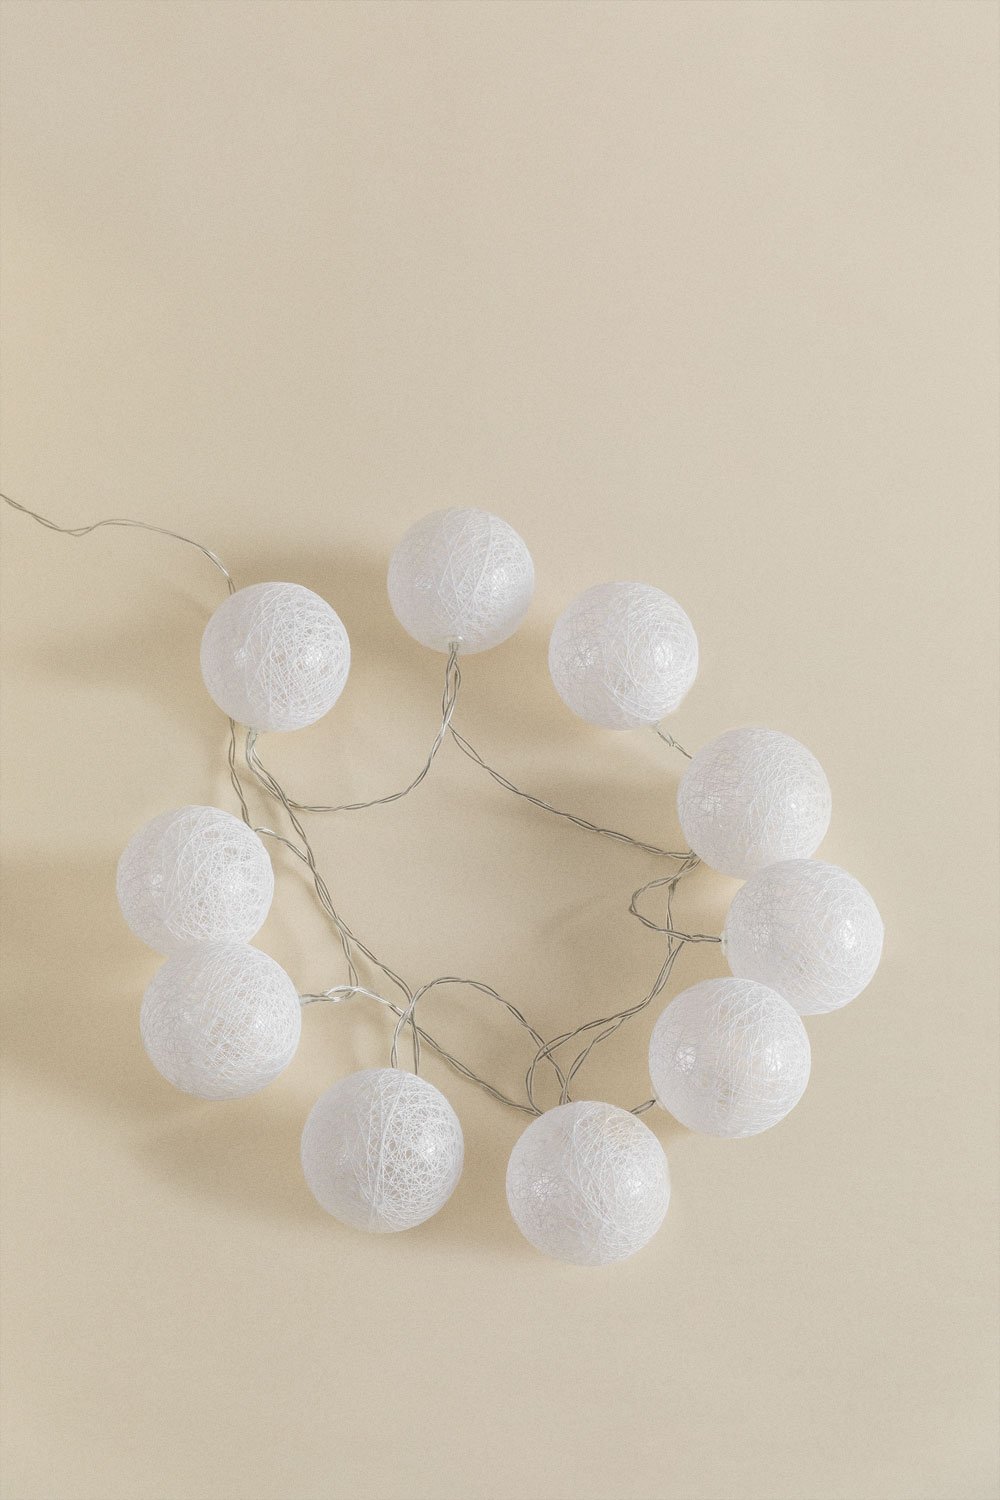 Ghirlanda decorativa di luci LED bianche (1,80 m - 4,50 m) Adda, immagine della galleria 2